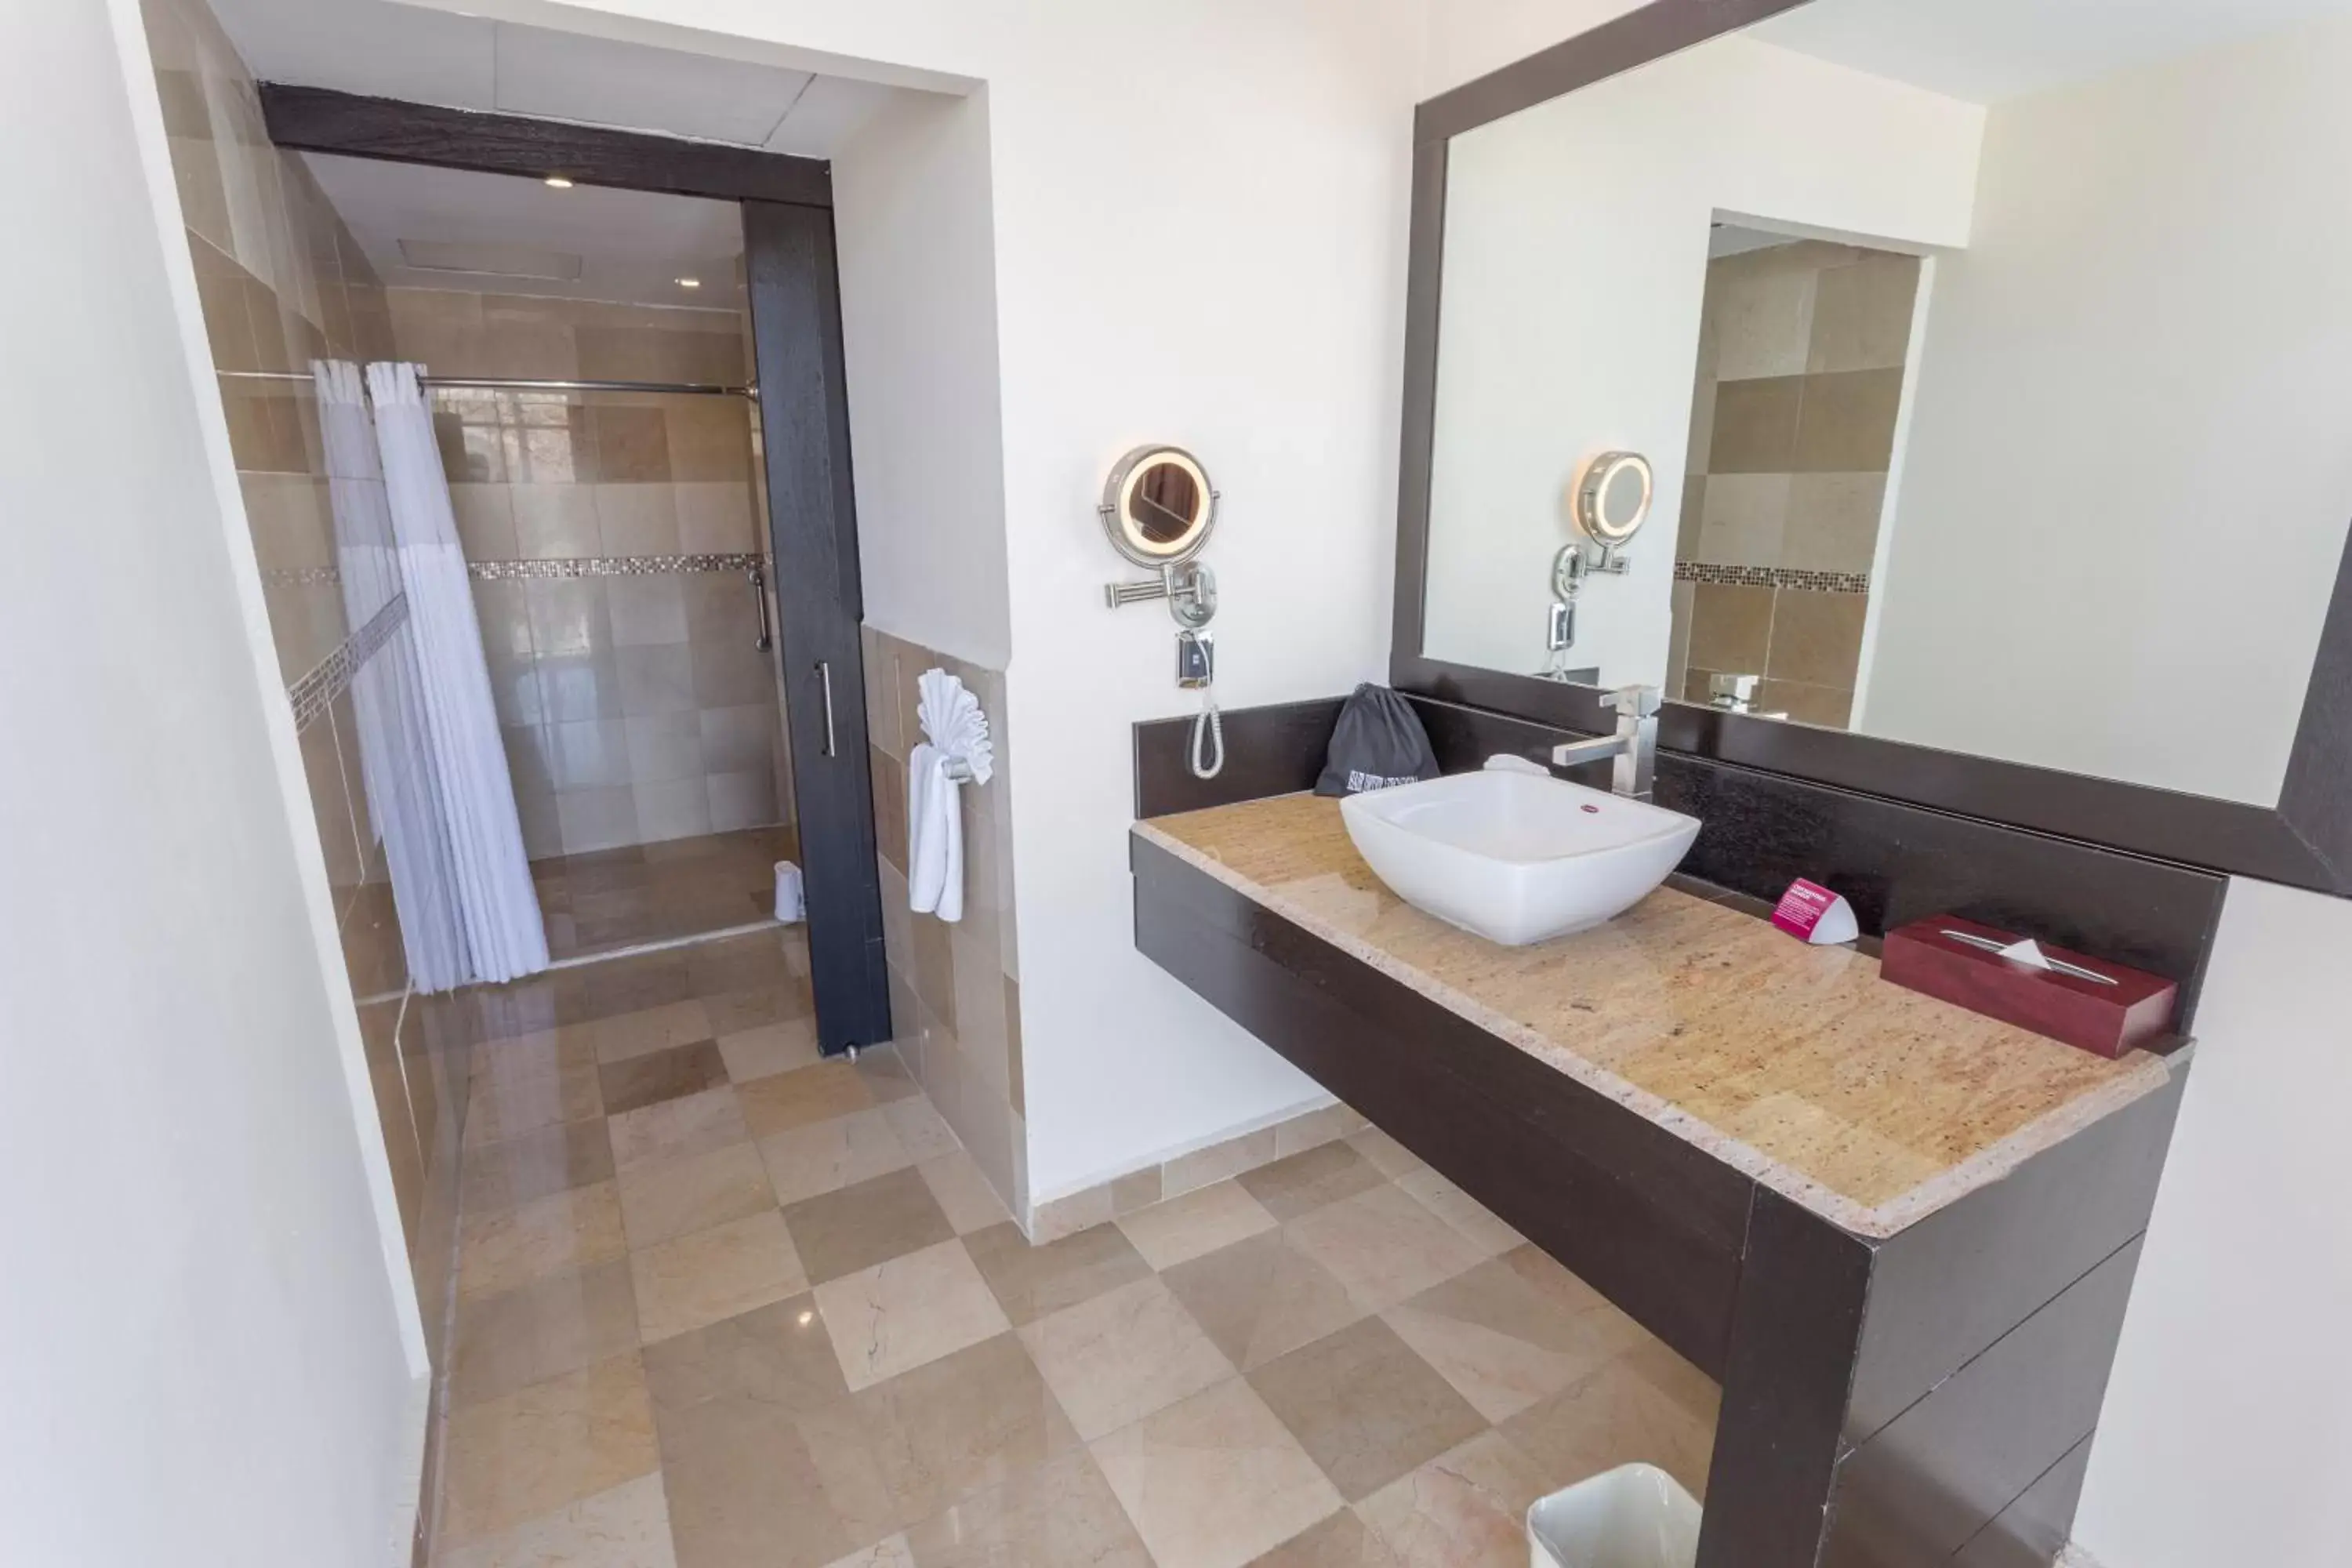 Photo of the whole room, Bathroom in Hotel Diamante Queretaro